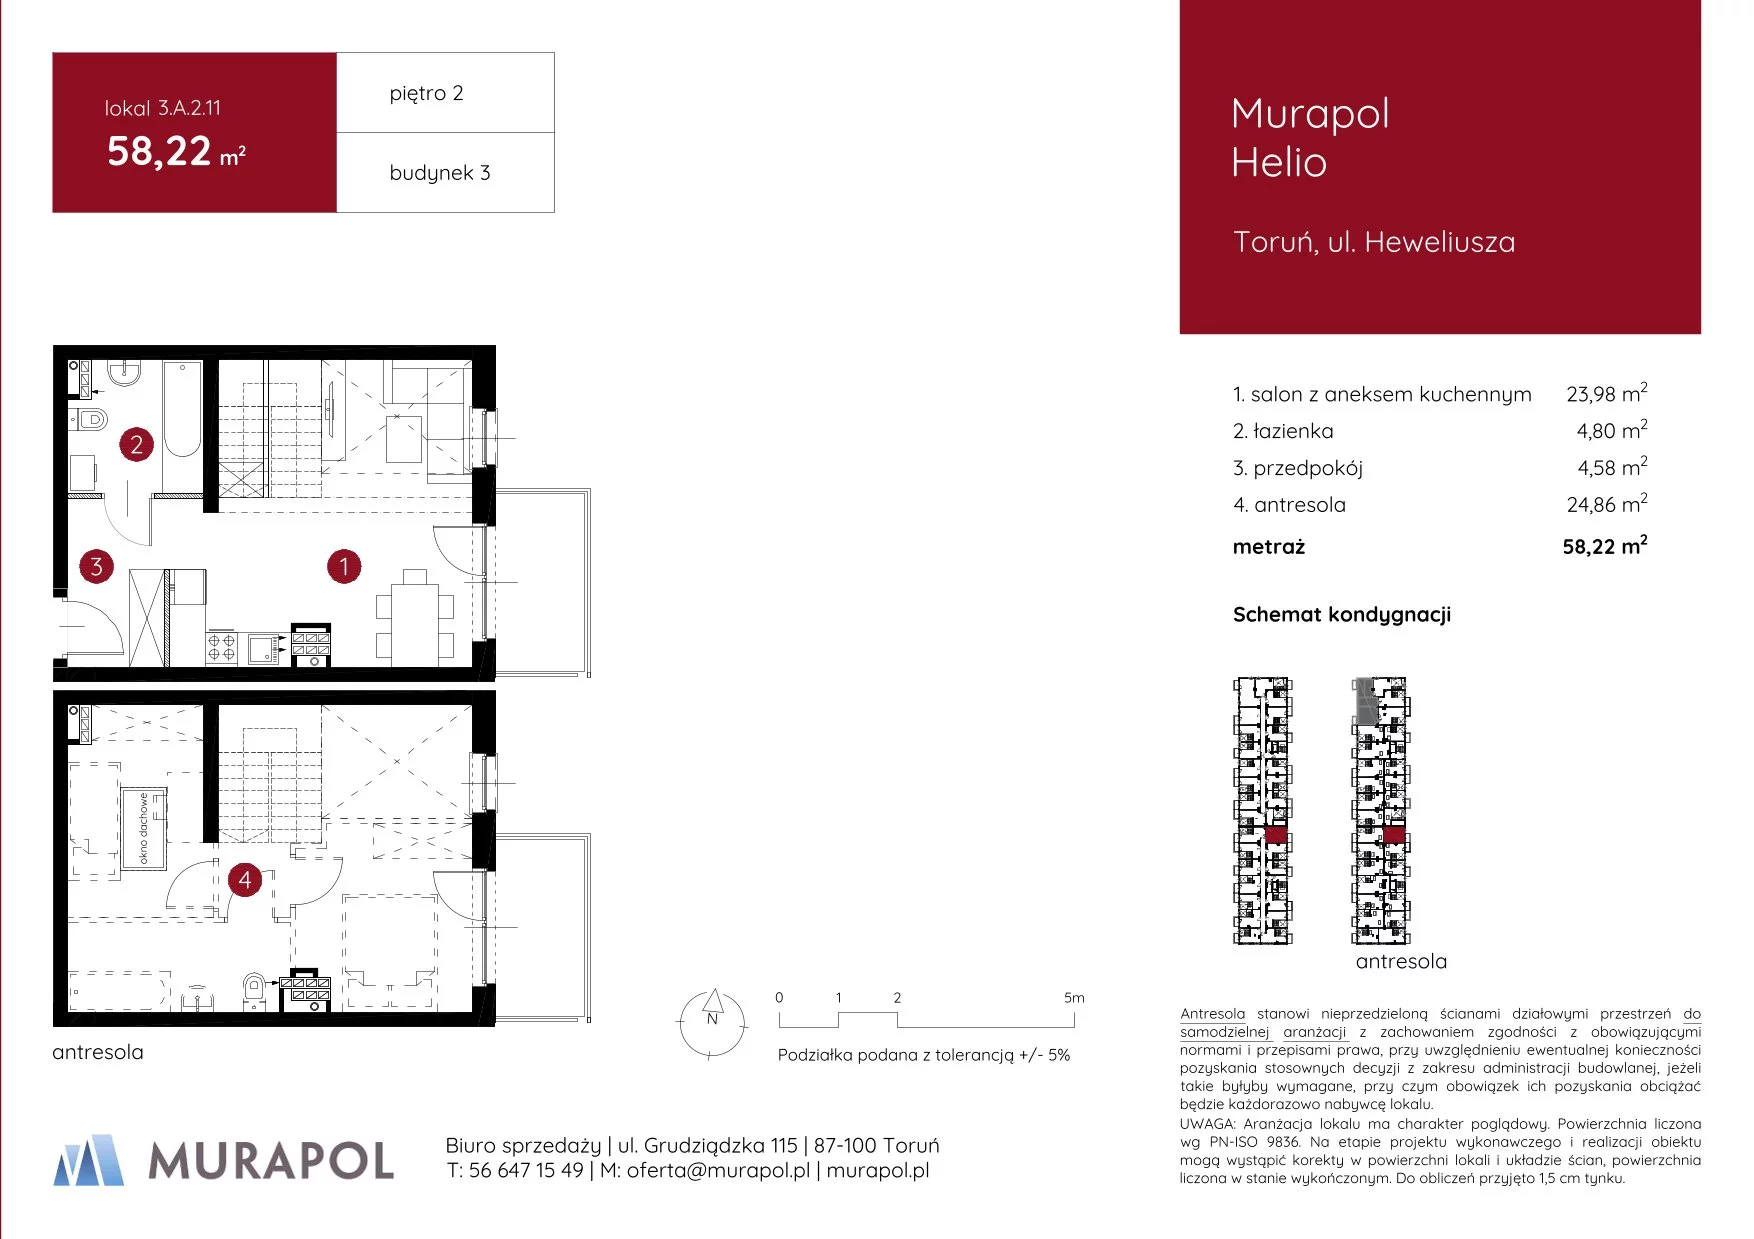 Mieszkanie 58,22 m², piętro 2, oferta nr 3.A.2.11, Murapol Helio, Toruń, Wrzosy, JAR, ul. Heweliusza